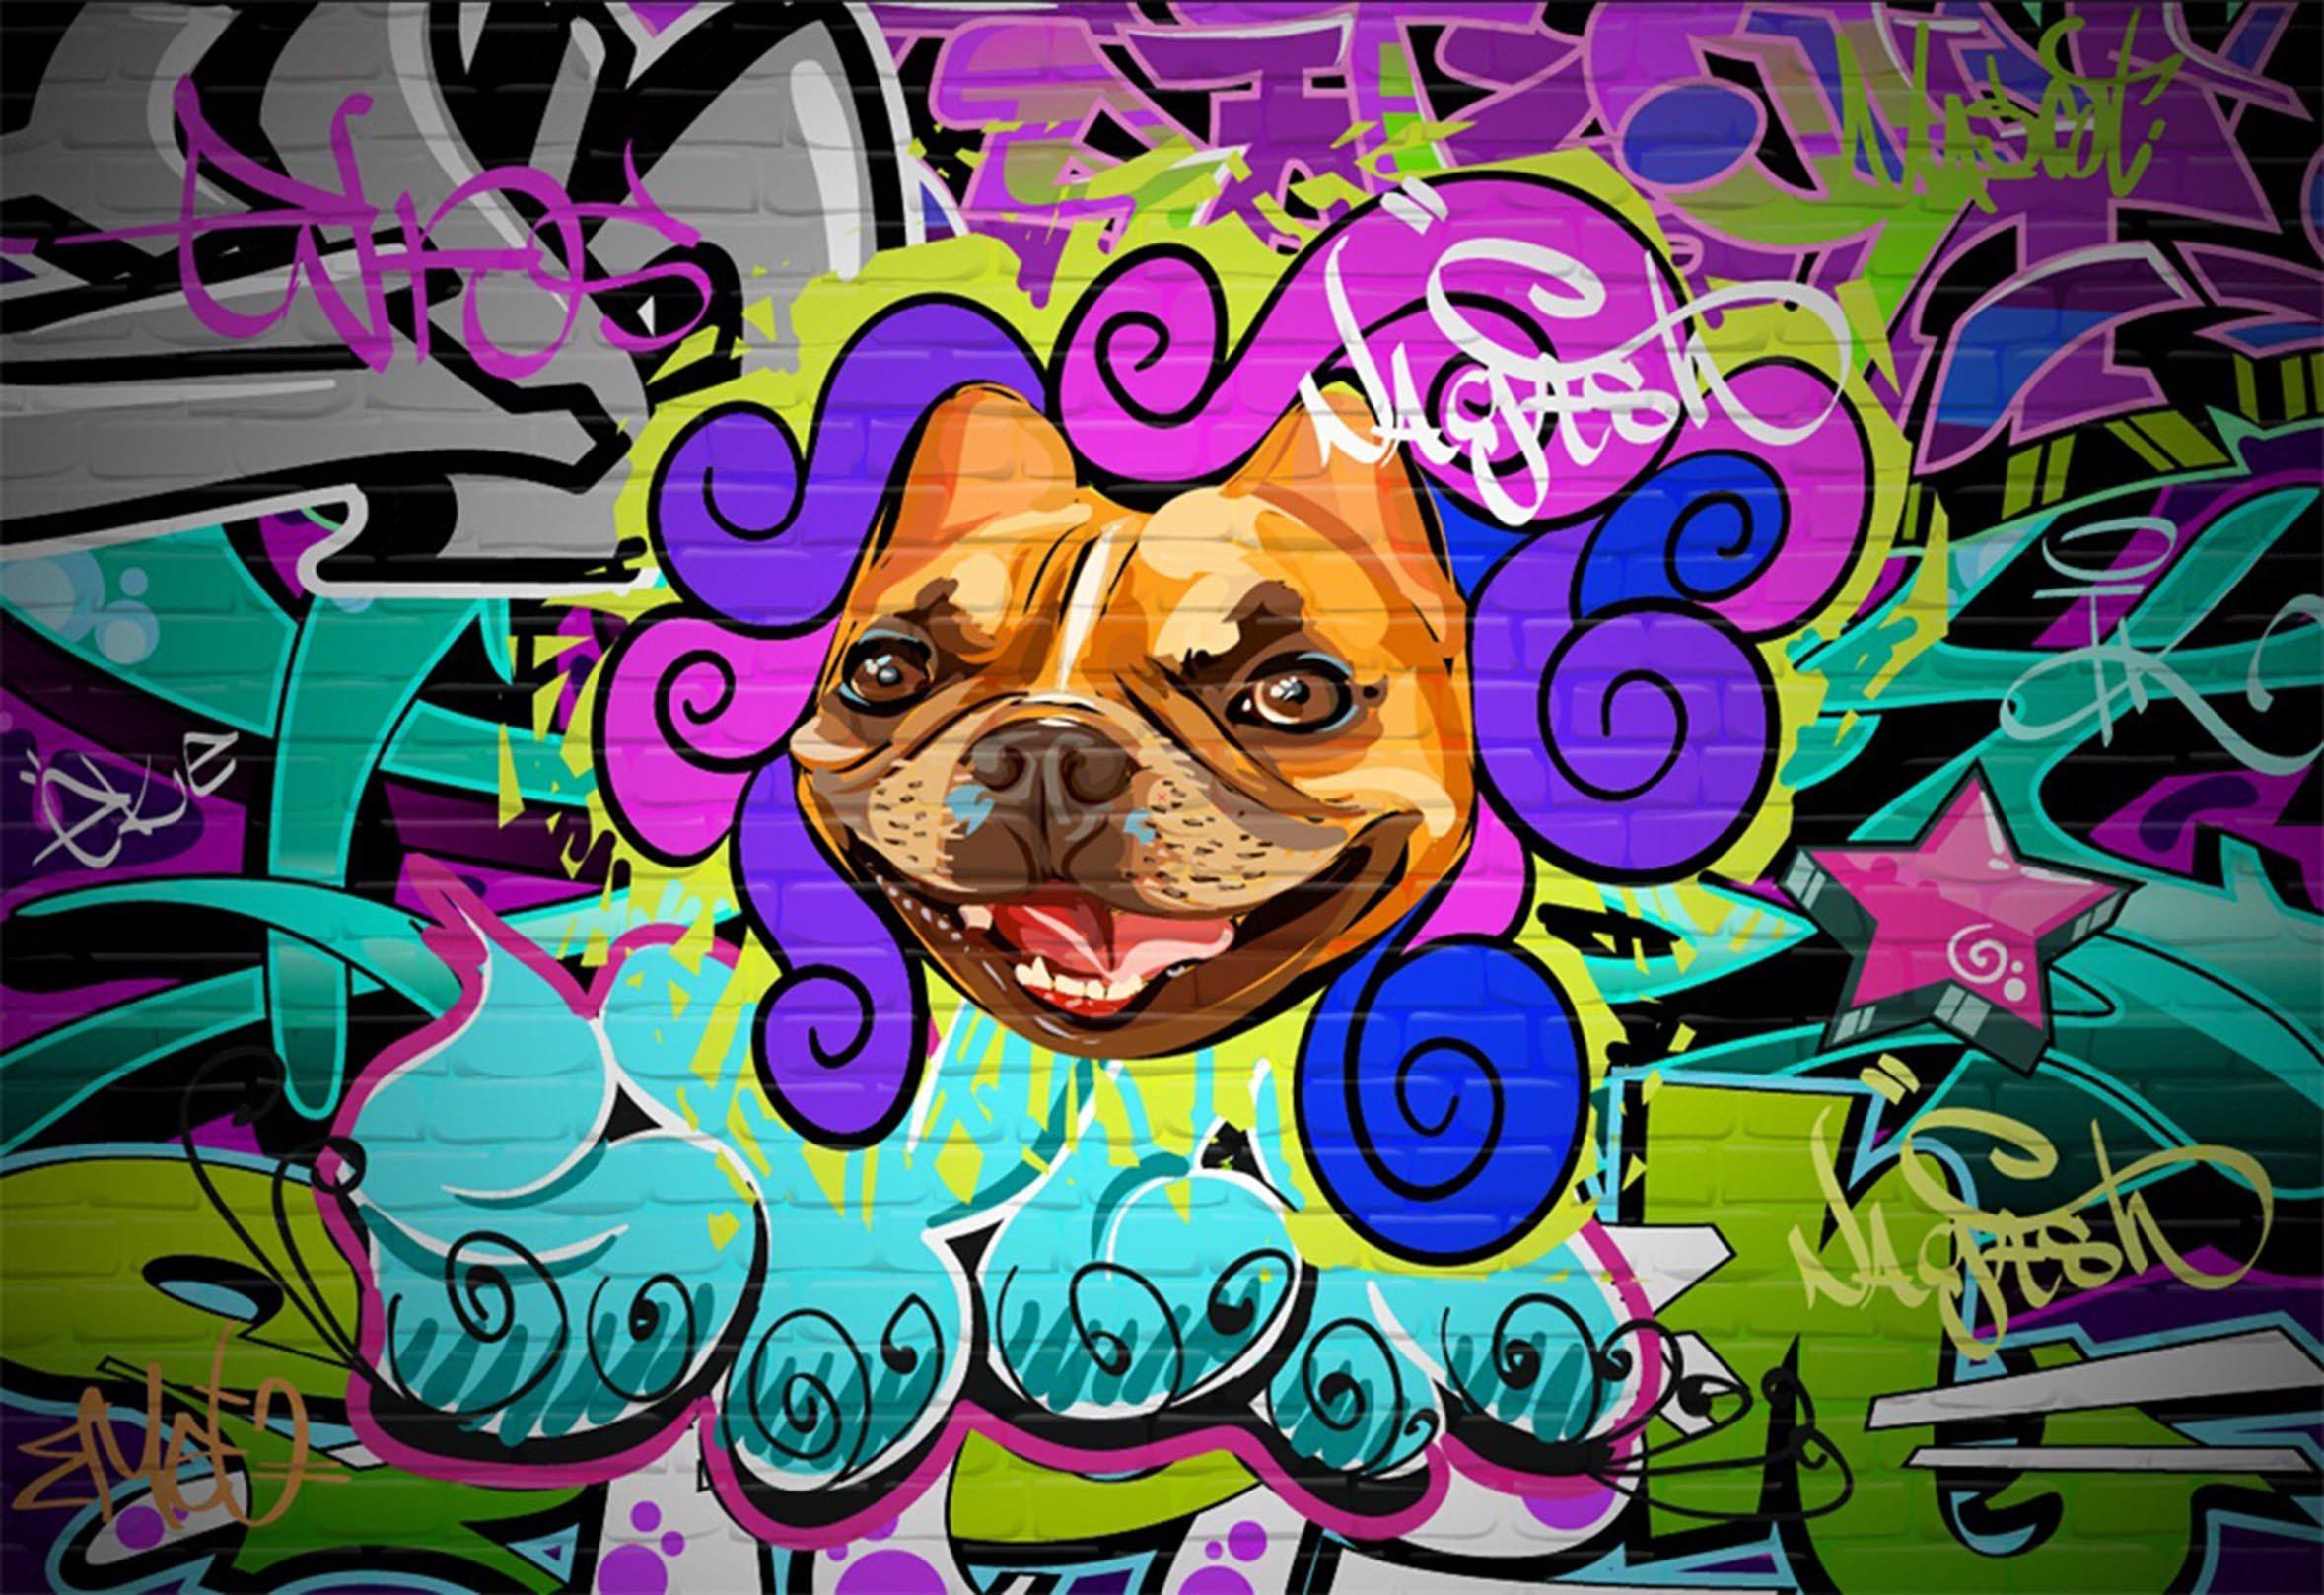 3D Graffiti Dog 318 Garage Door Mural Wallpaper AJ Wallpaper 